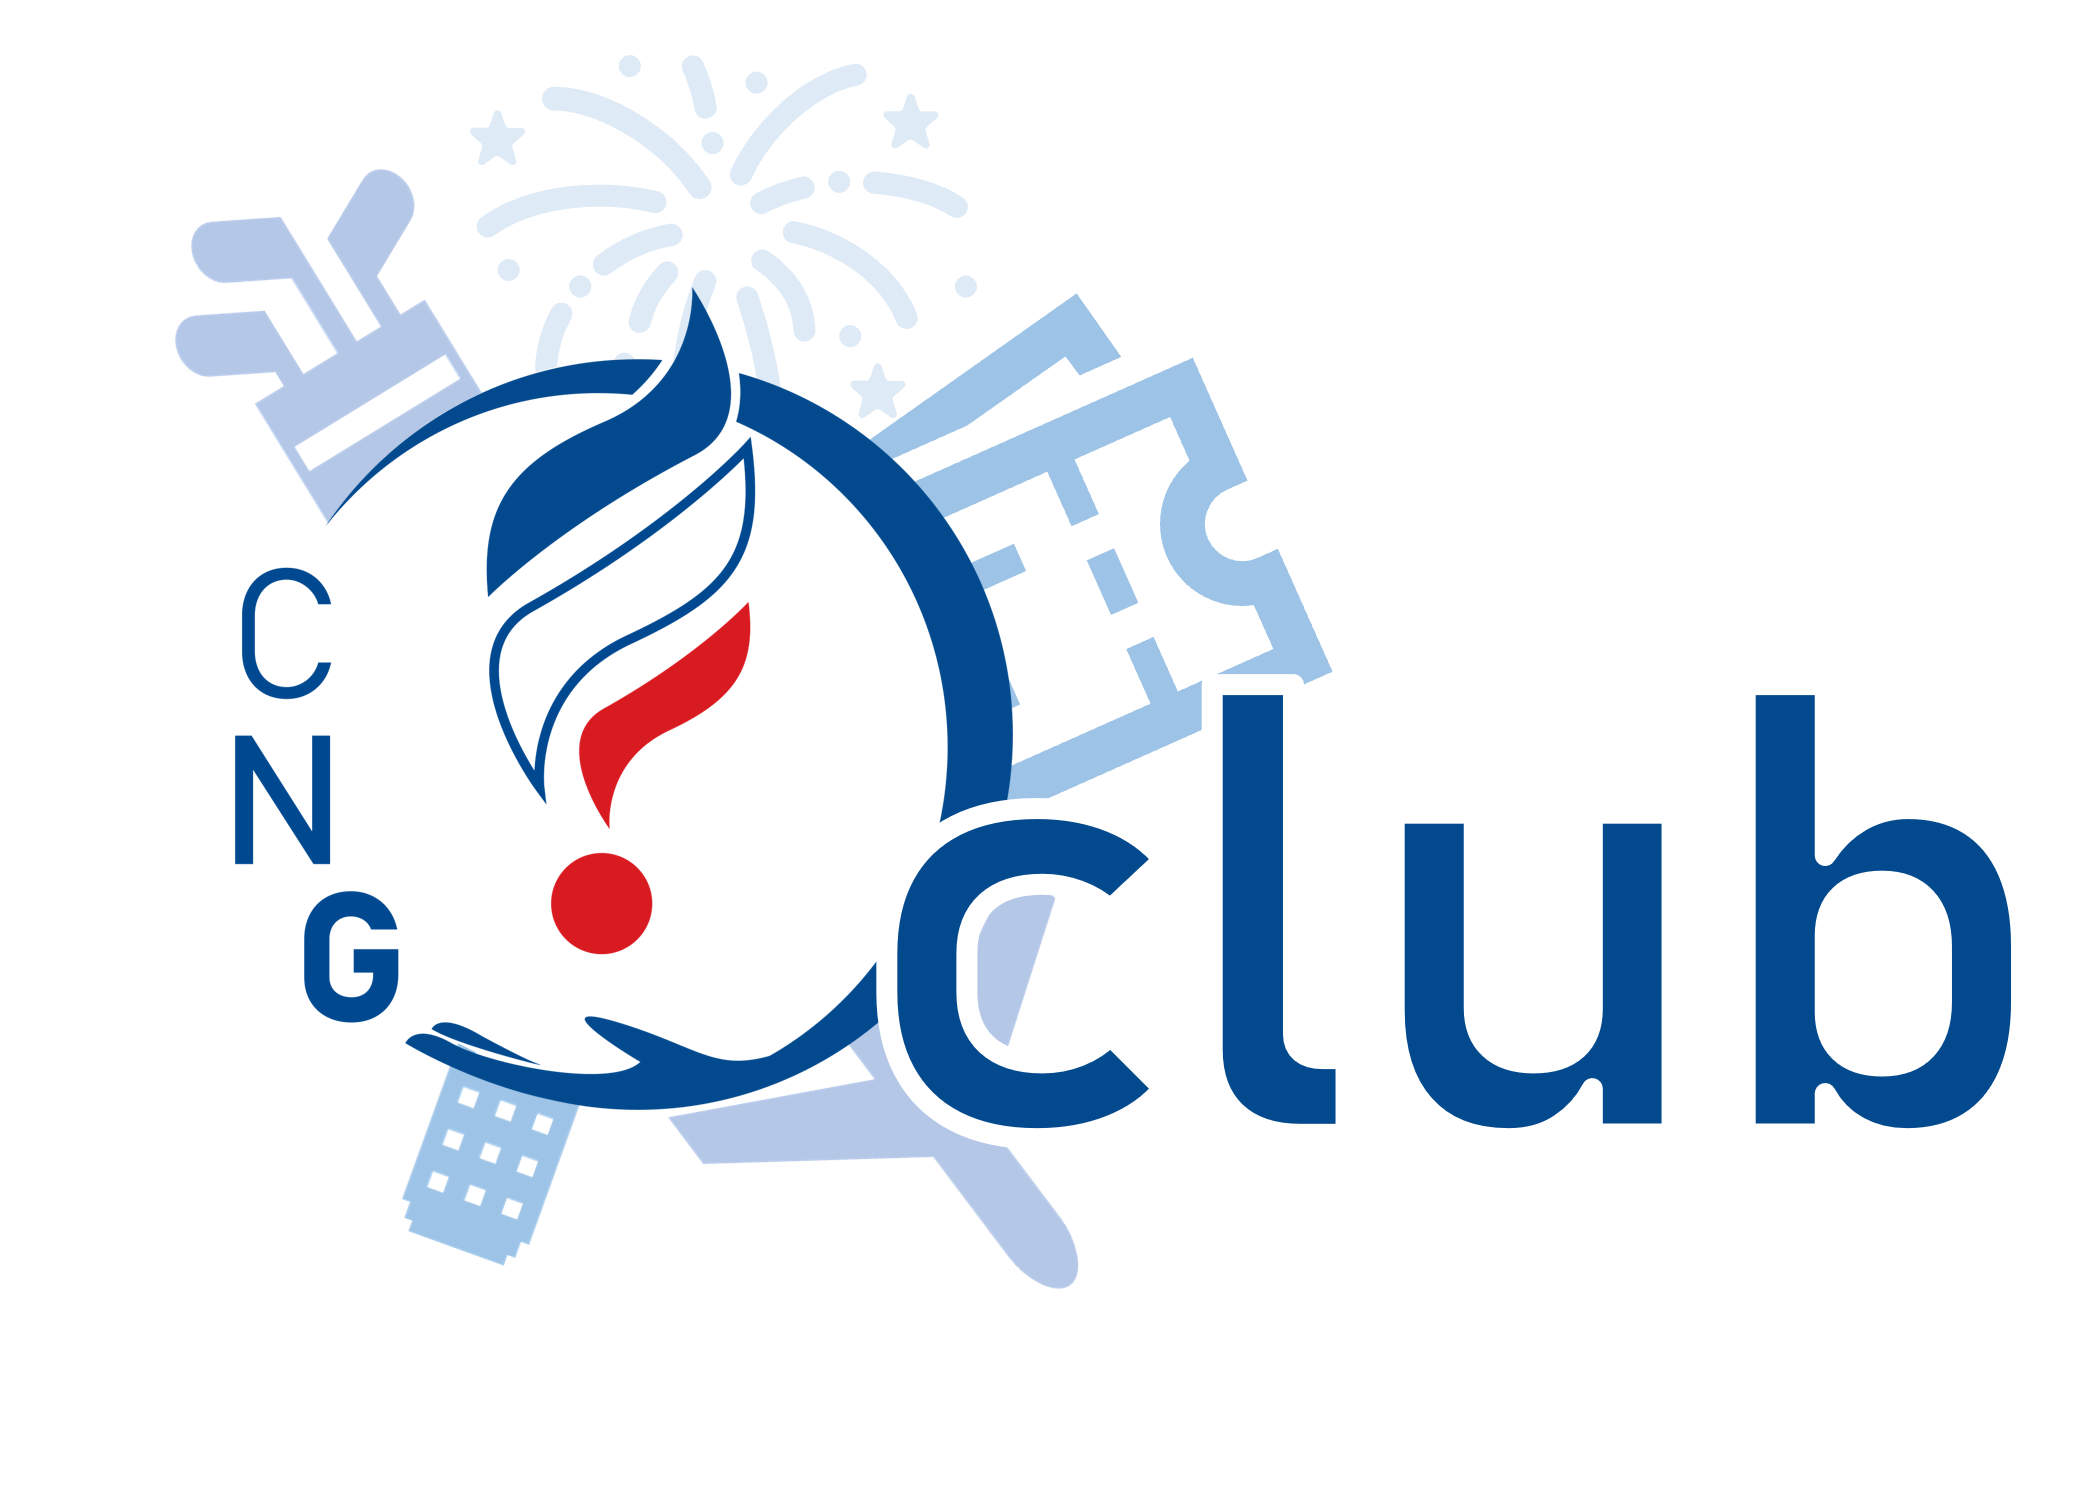 CNG Club logo